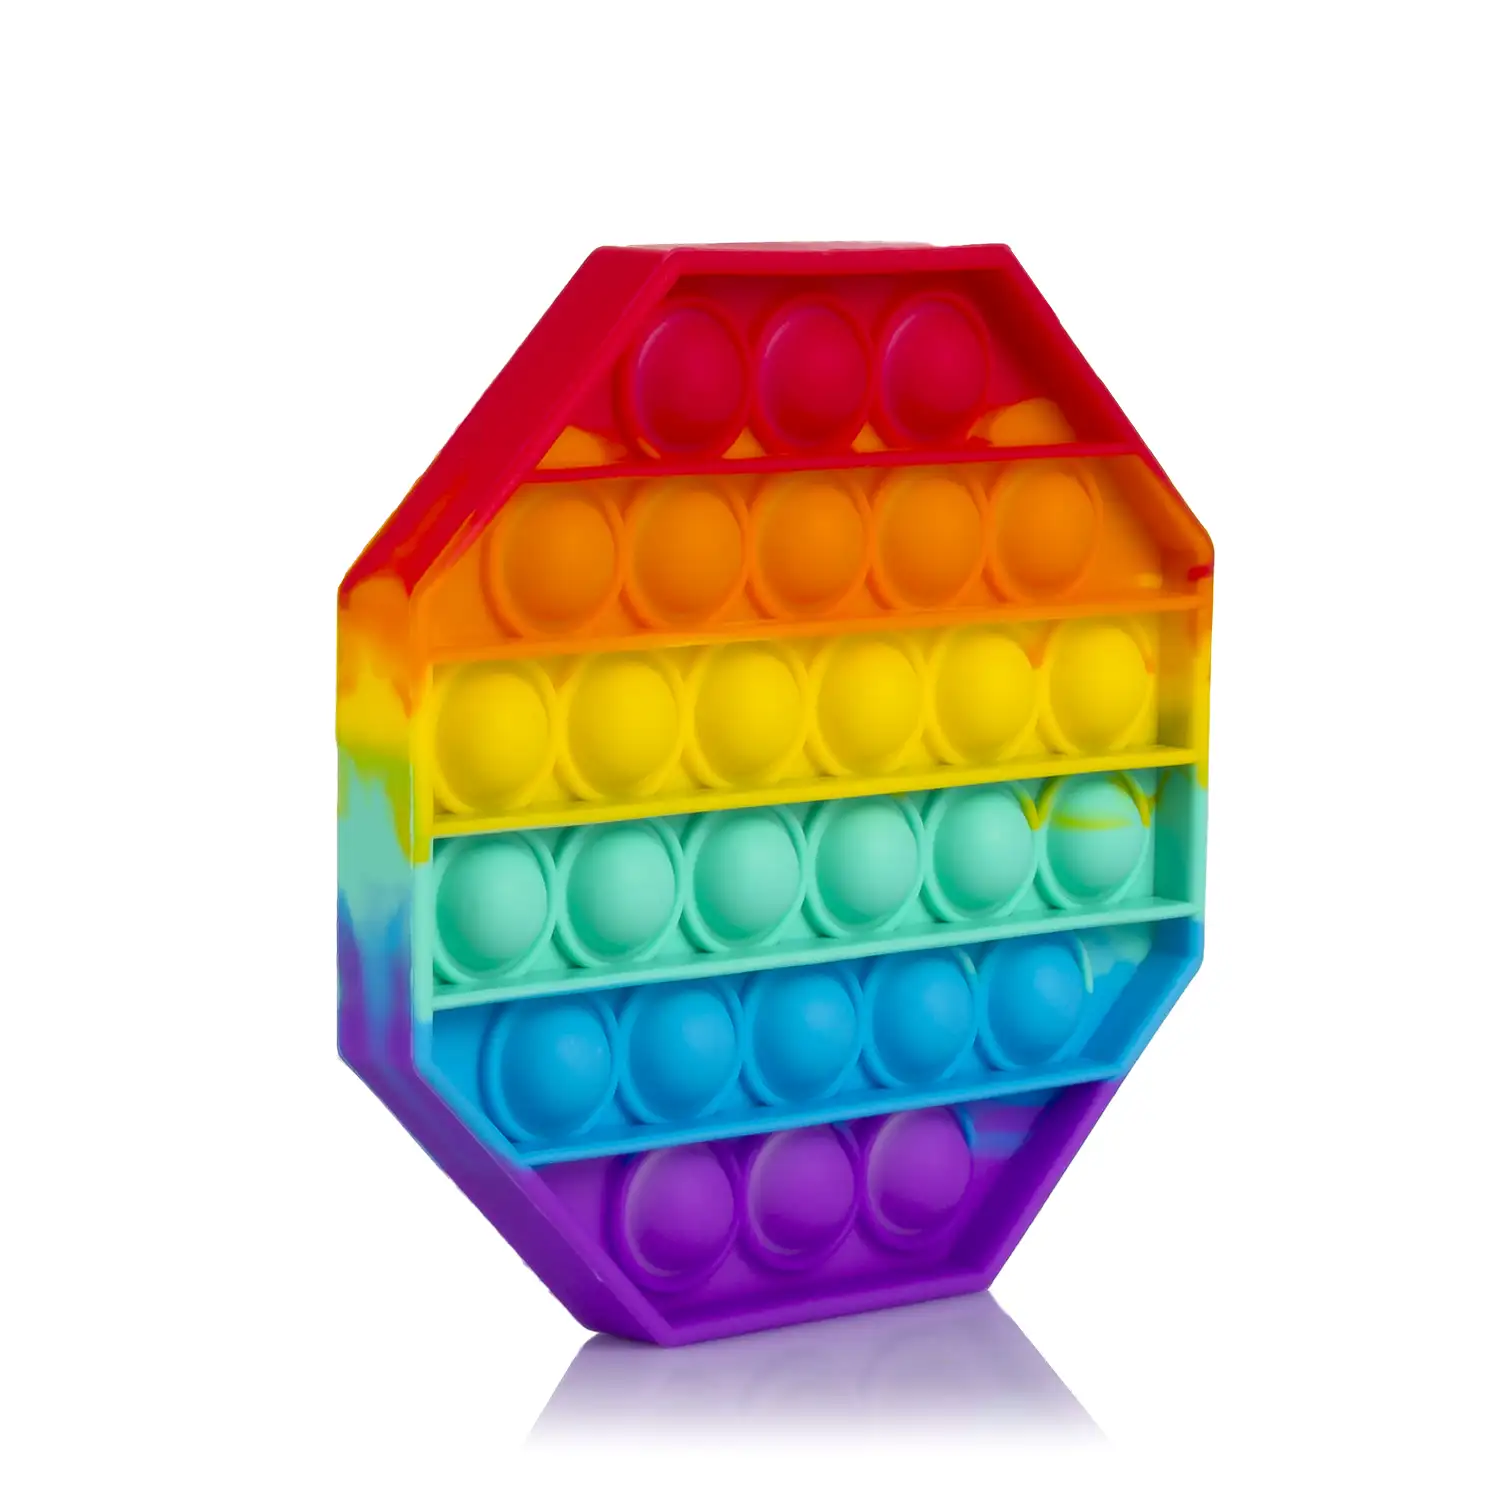 Bubble Pop It juguete sensitivo desestresante, burbujas de silicona para apretar y pulsar. Diseño octogonal multicolor.